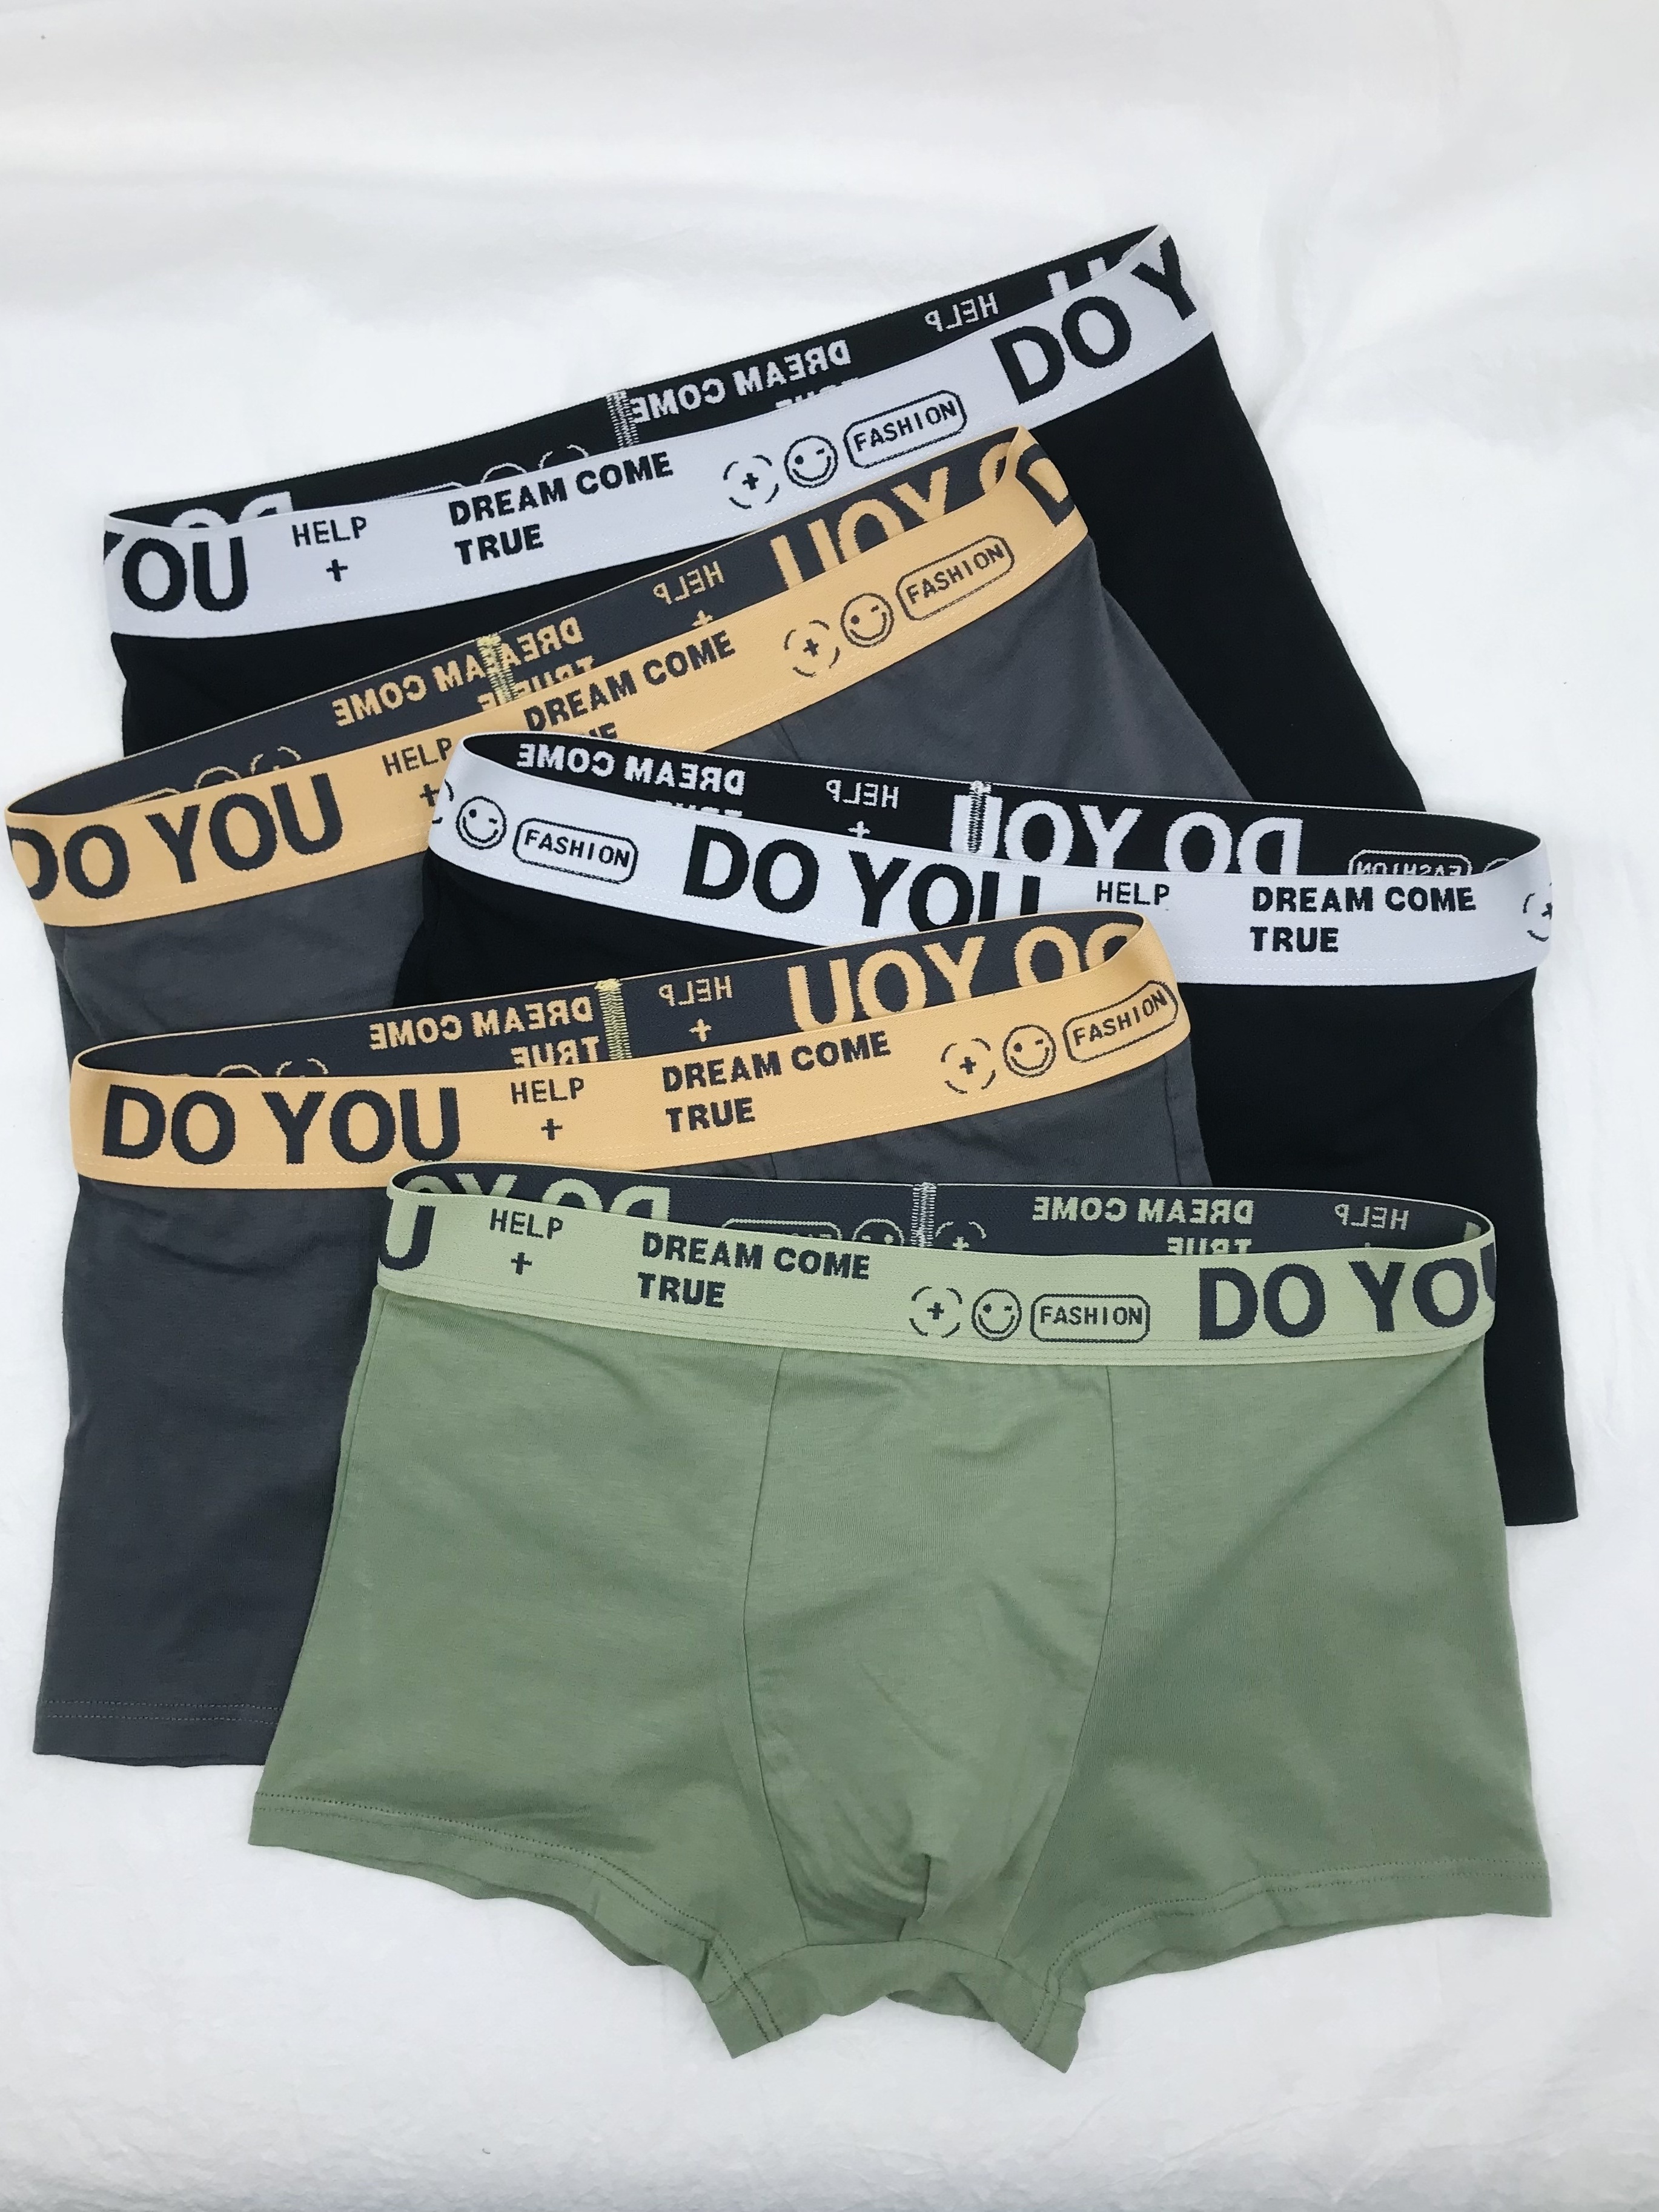 Men's Breathable Boxer Briefs Underwear (5pcs Set)